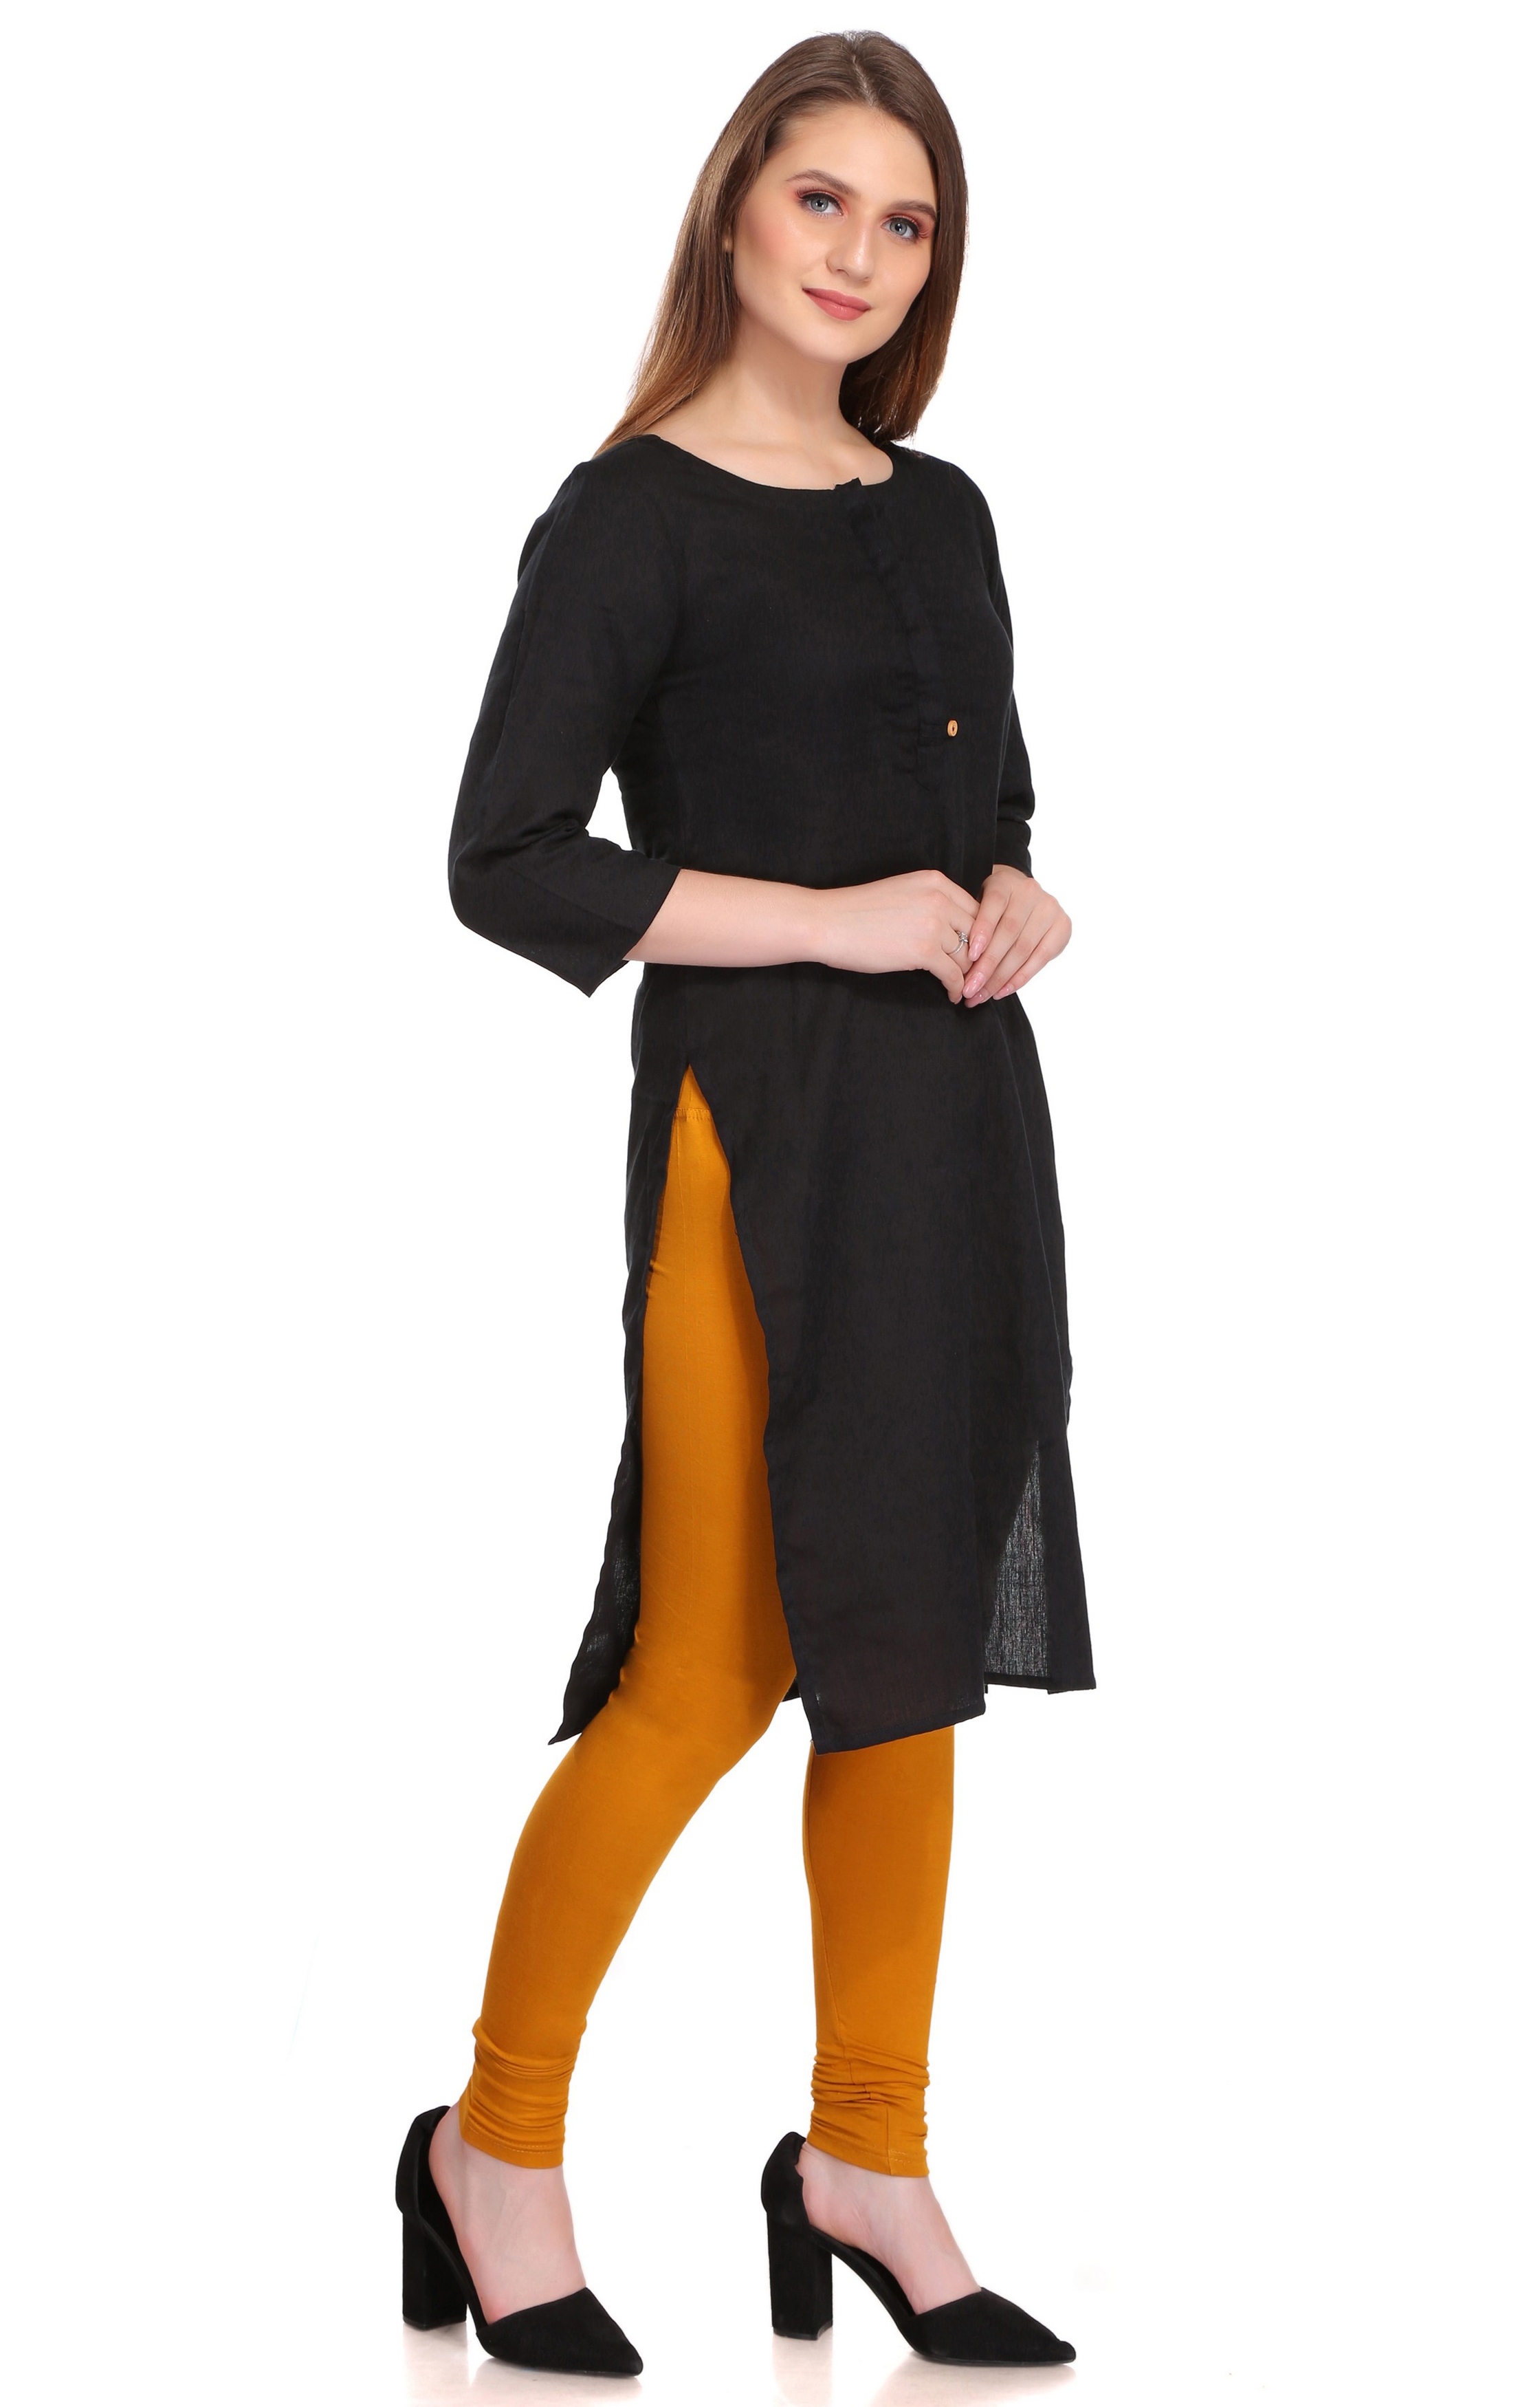 Colorfit | Colorfit Cotton Lycra Churidar Length Leggings for Women 0